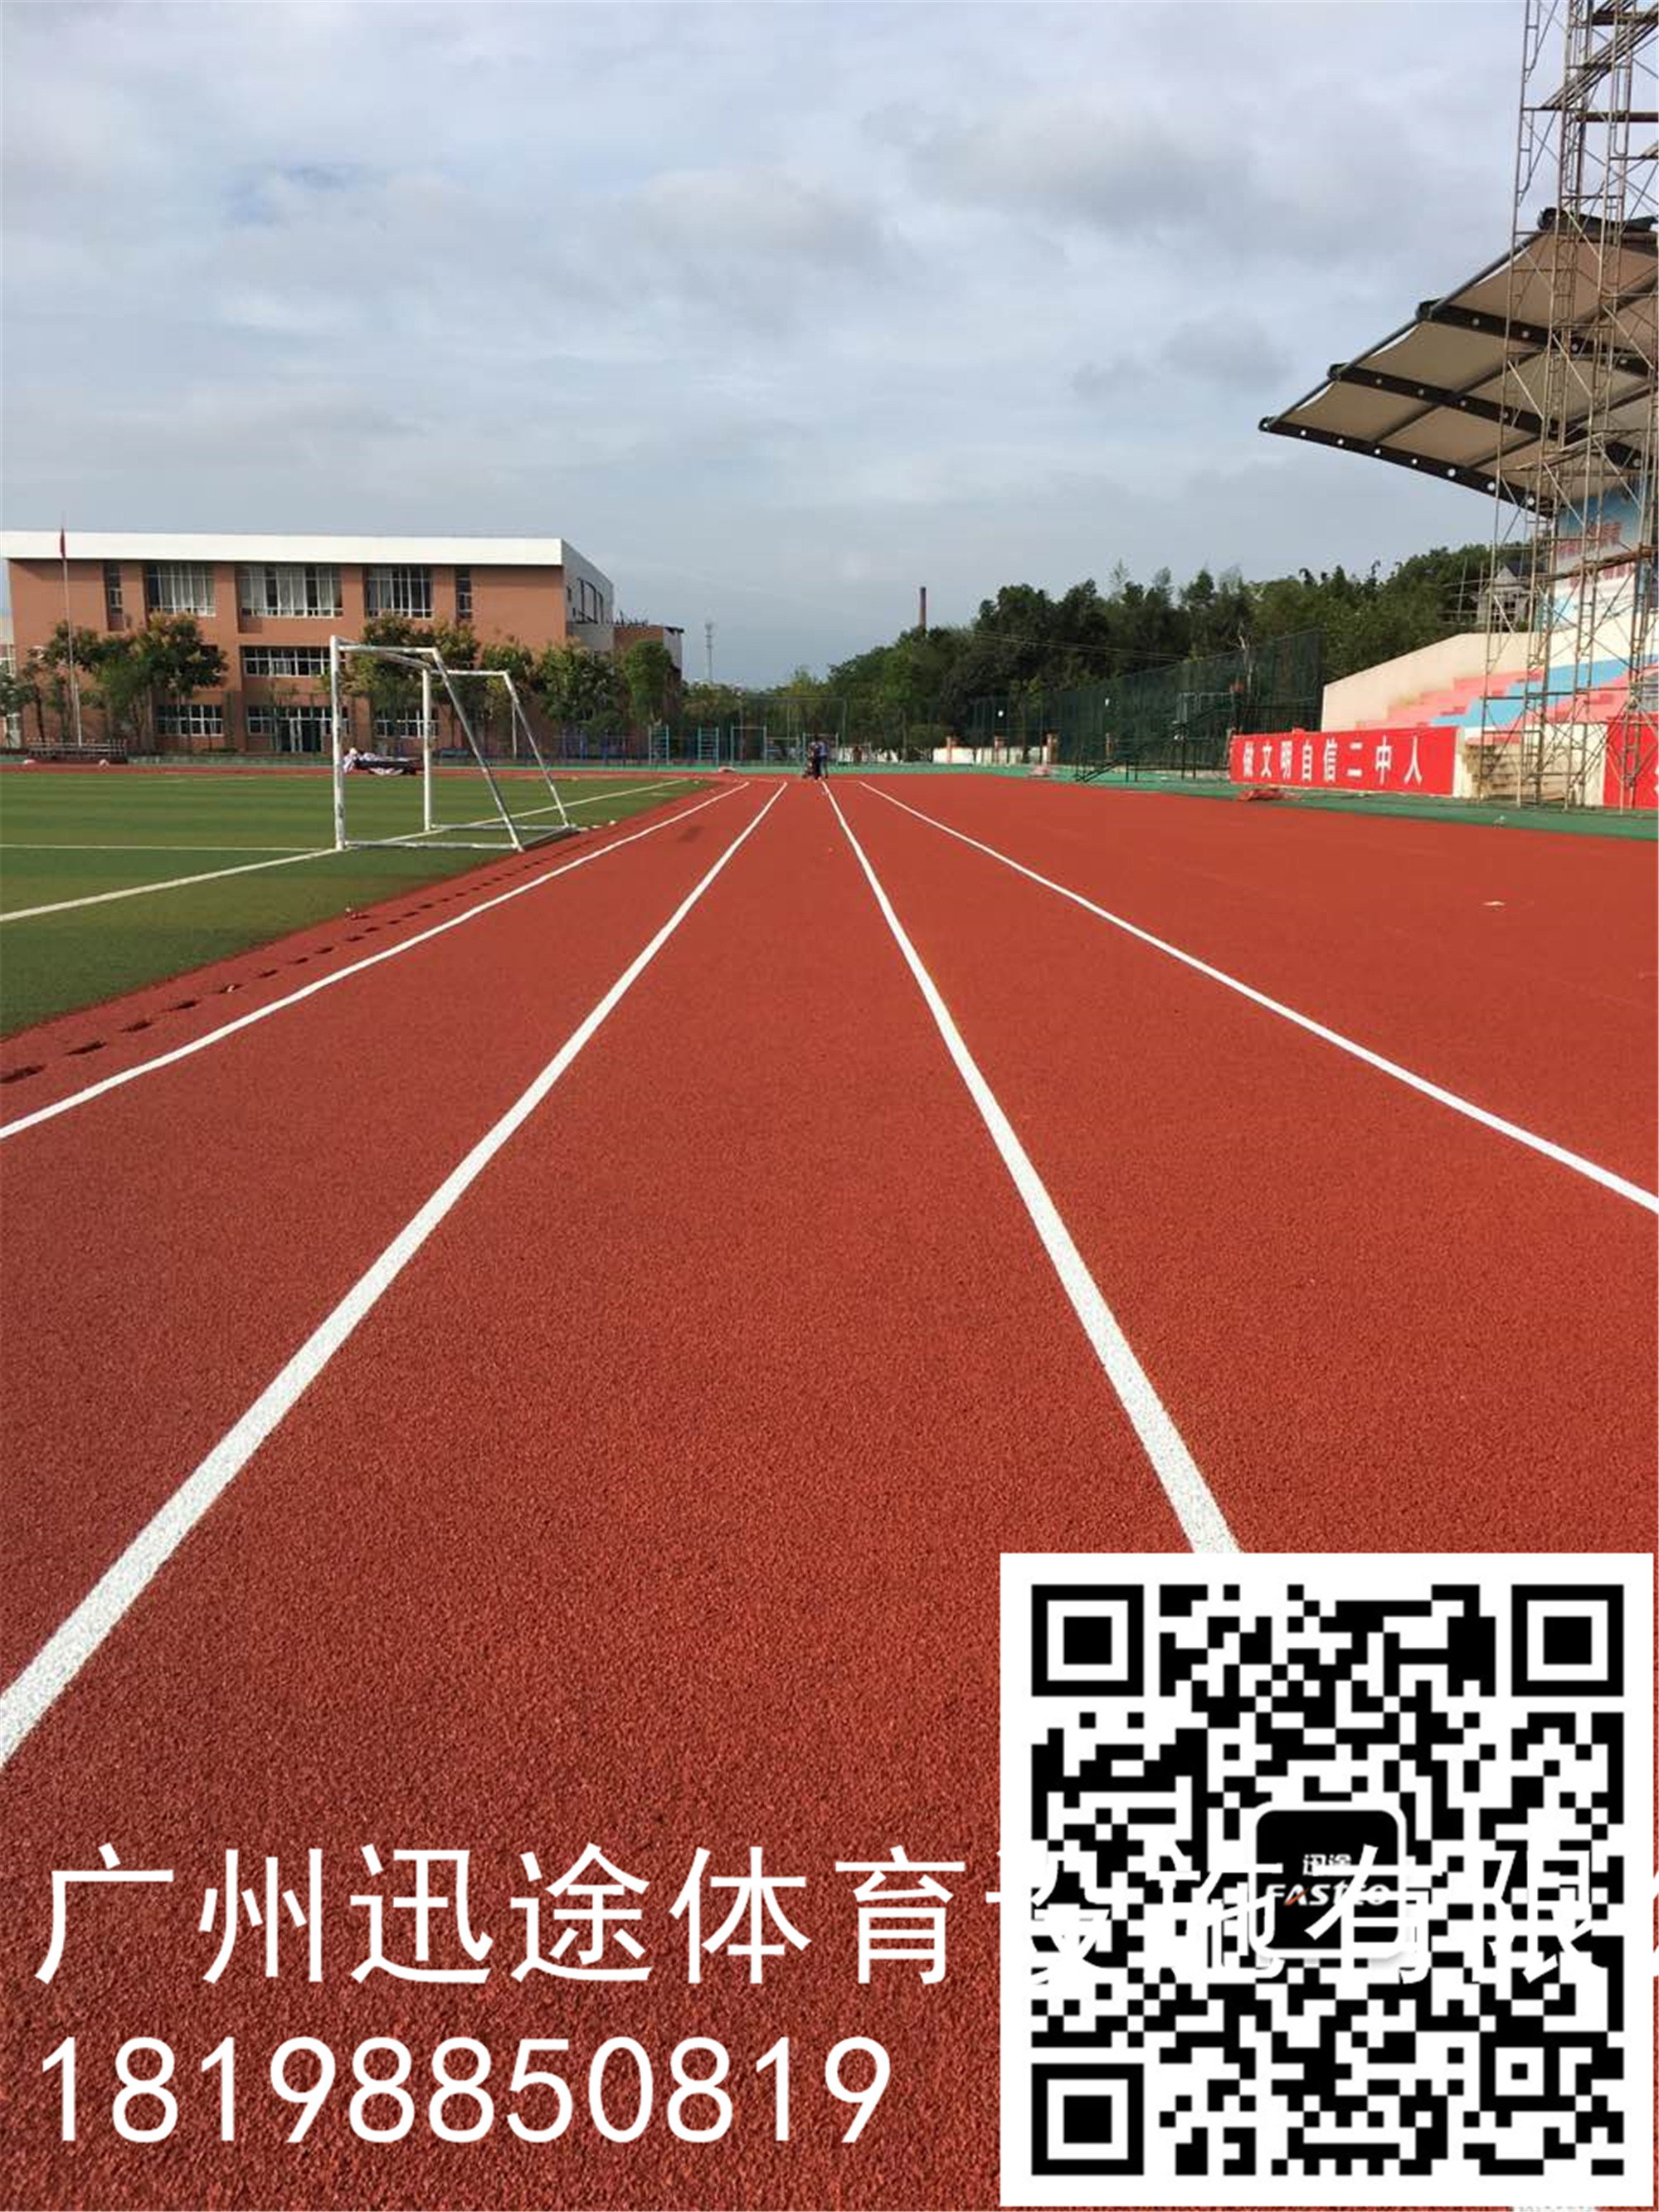 福建省霞浦青少年活动中心混合型塑胶跑道完工